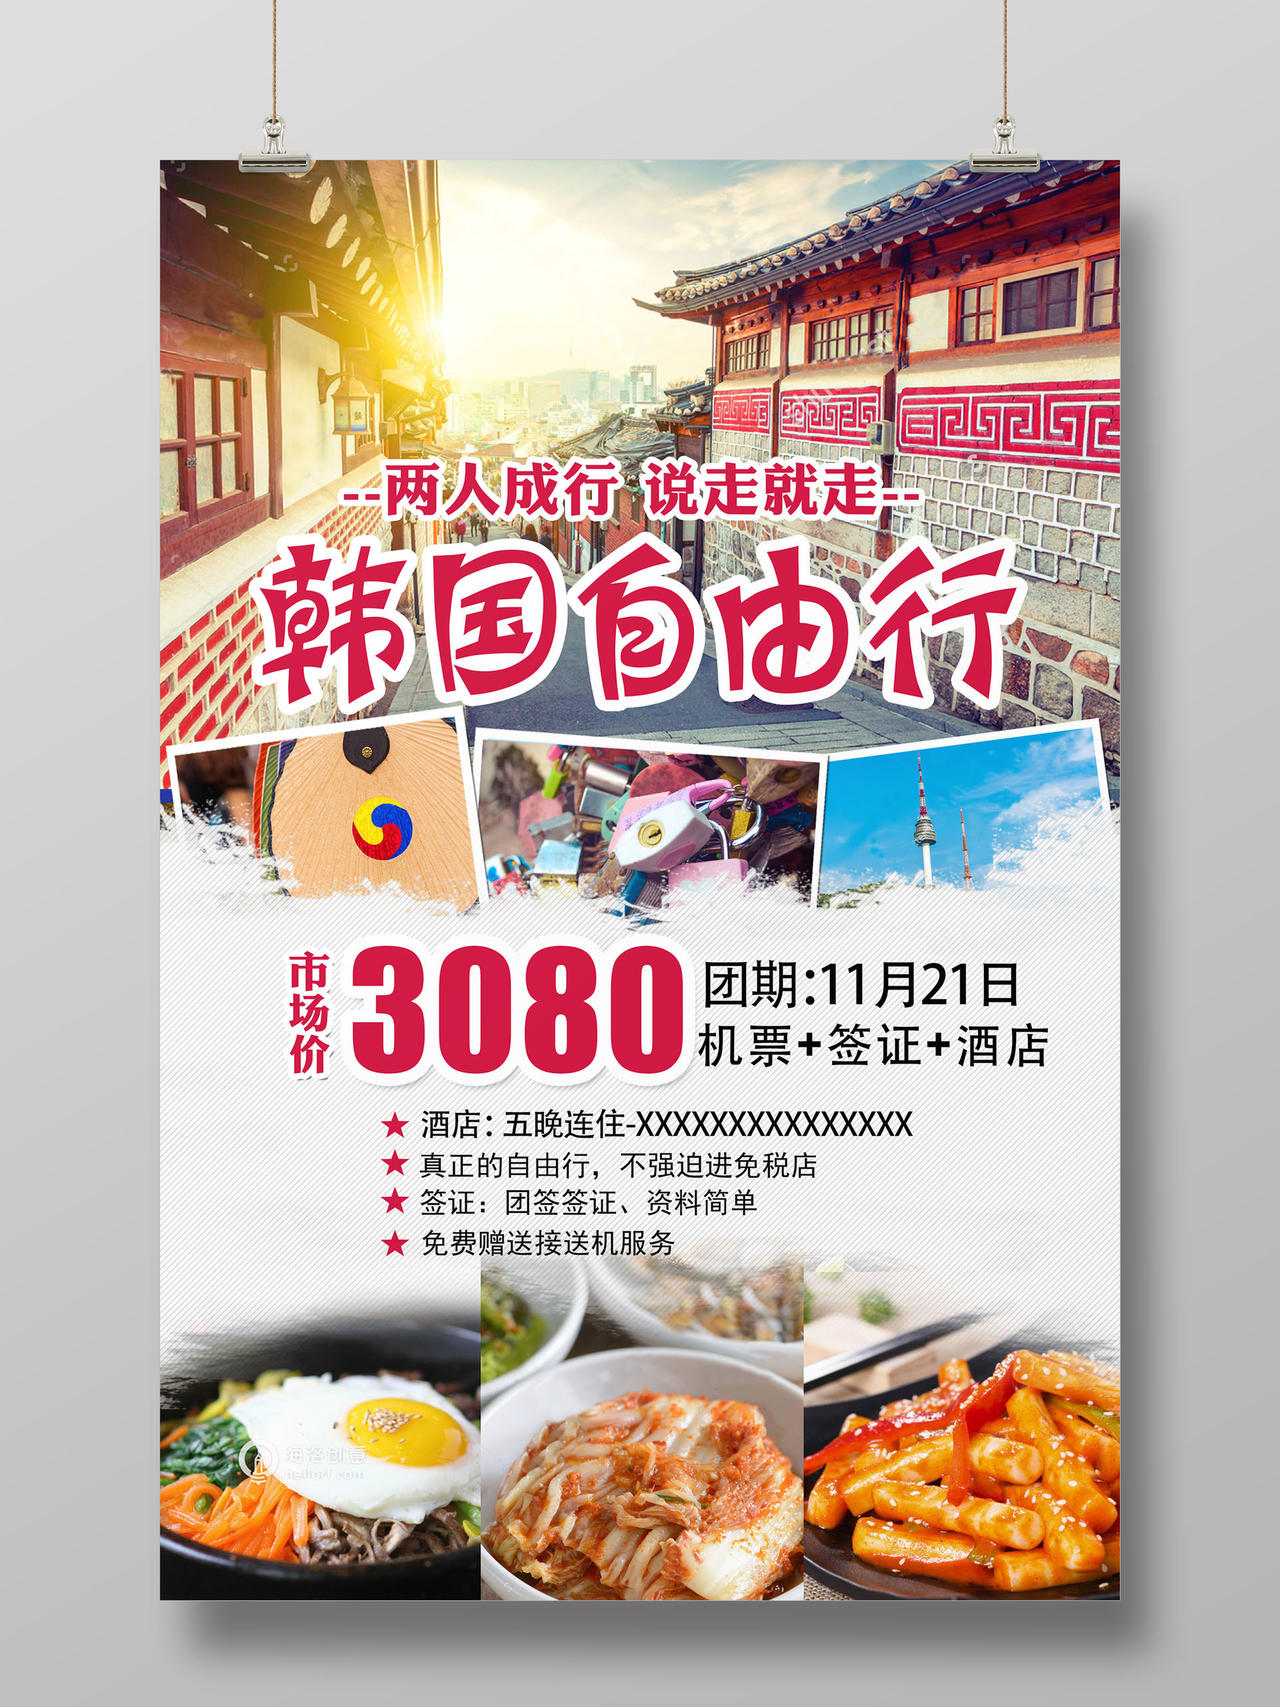 韩国自由行旅游宣传海报